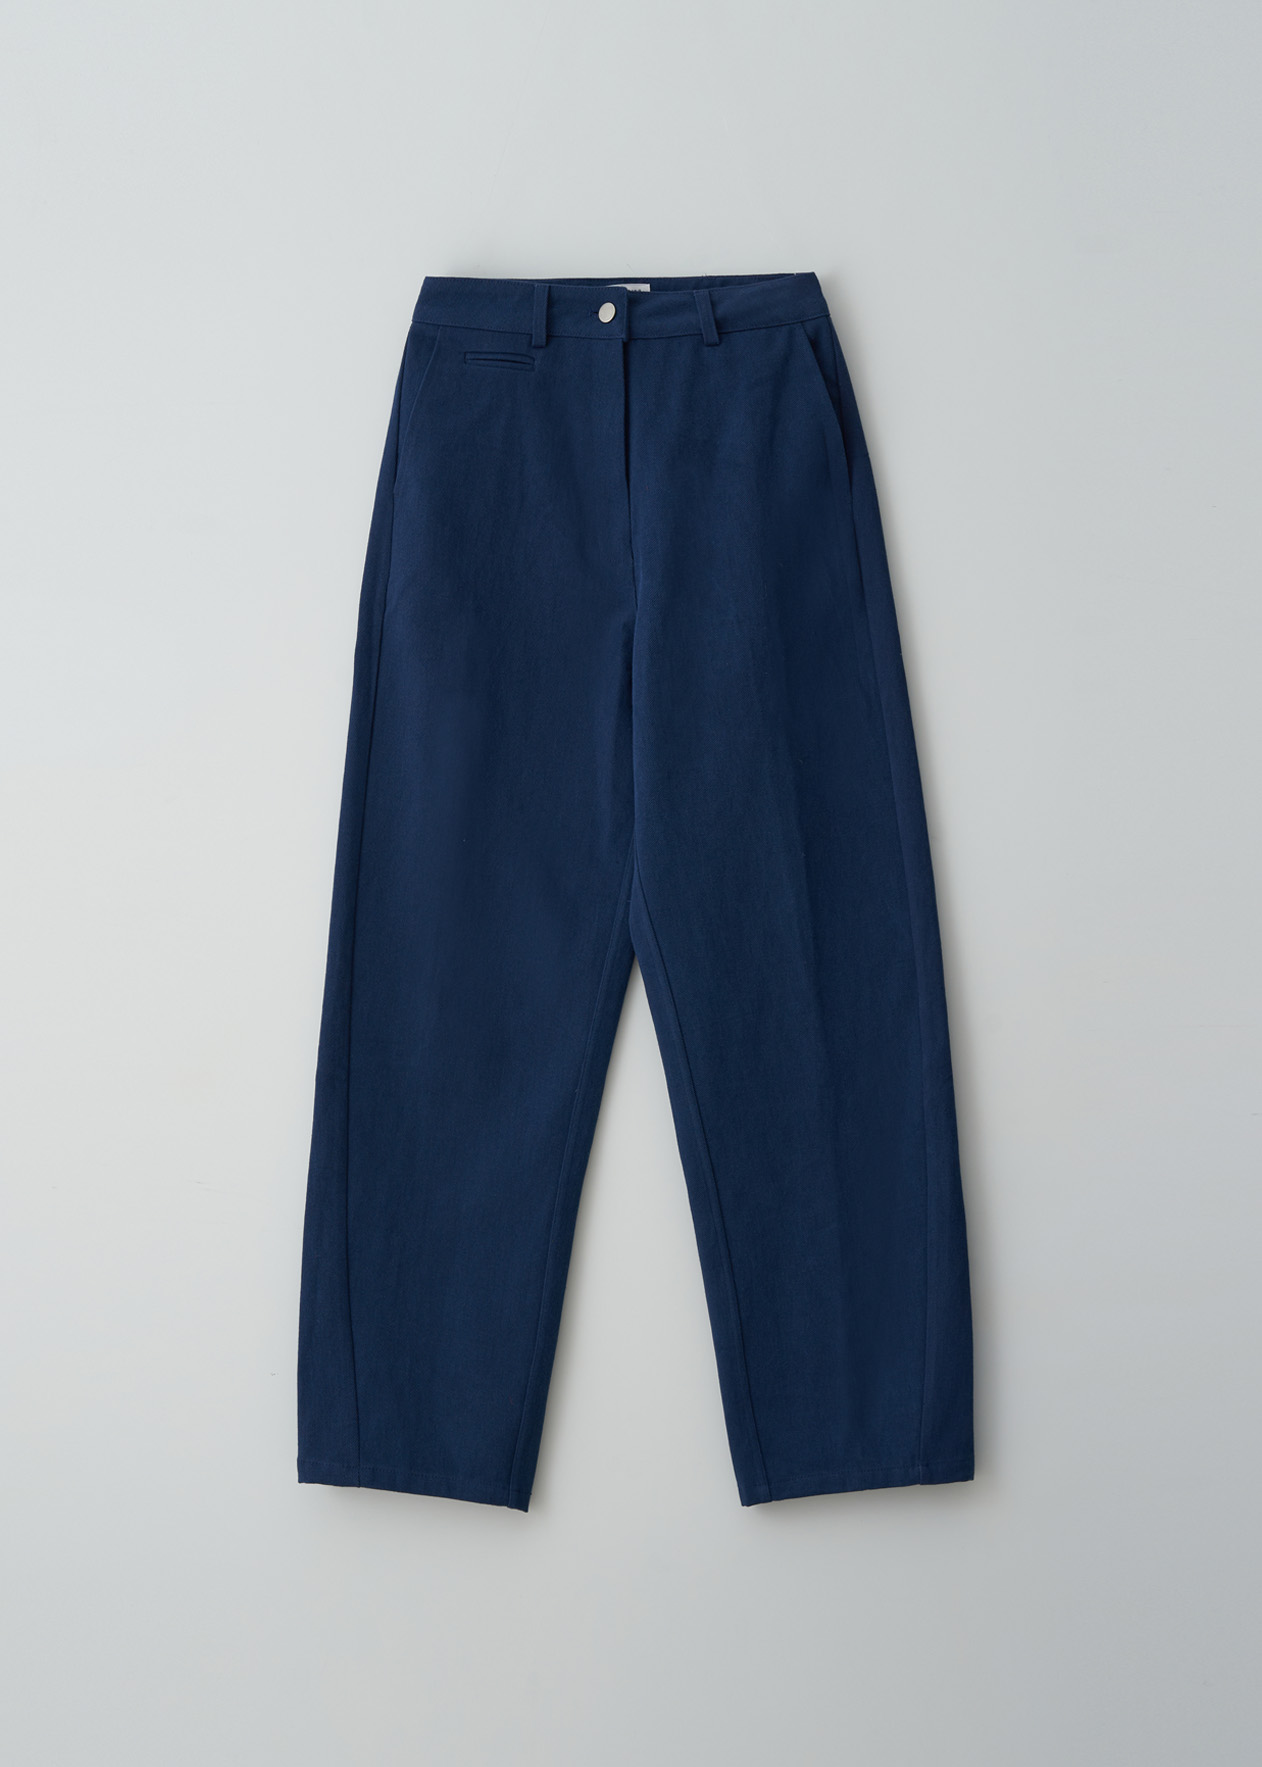 SALE_Cotton Pants (NAVY)